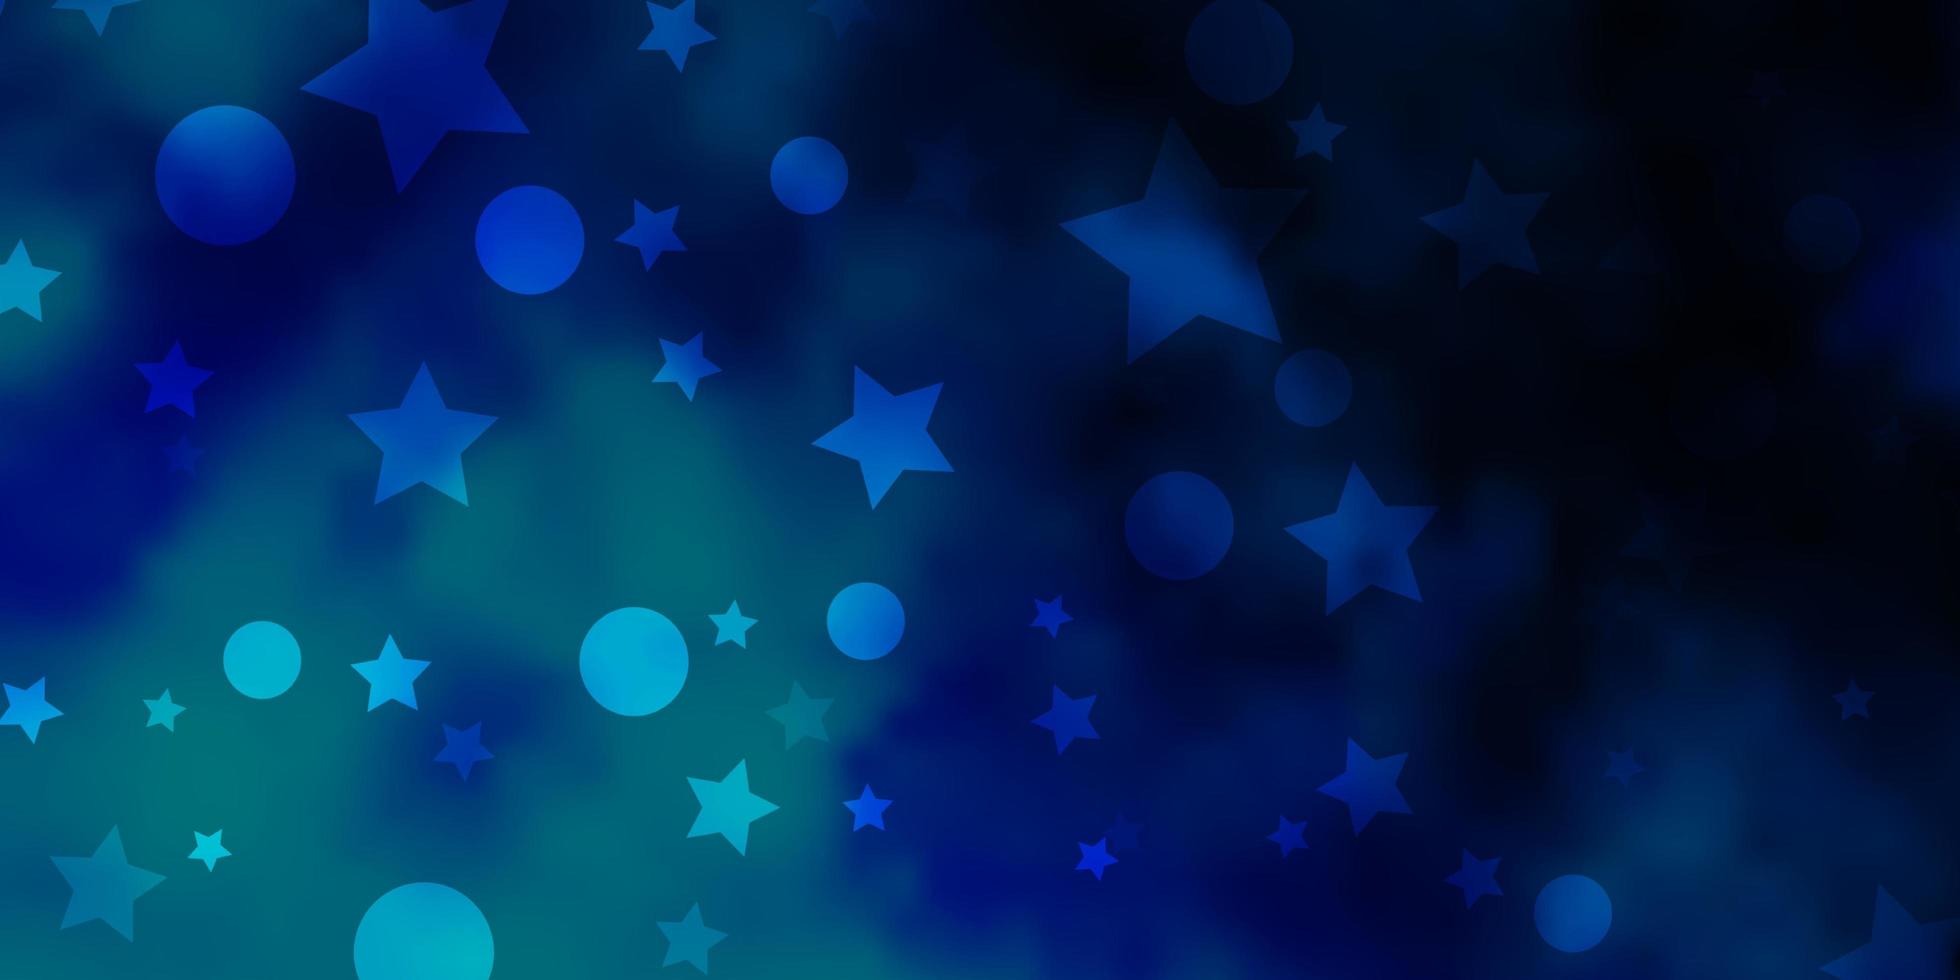 sfondo vettoriale azzurro con cerchi, stelle.